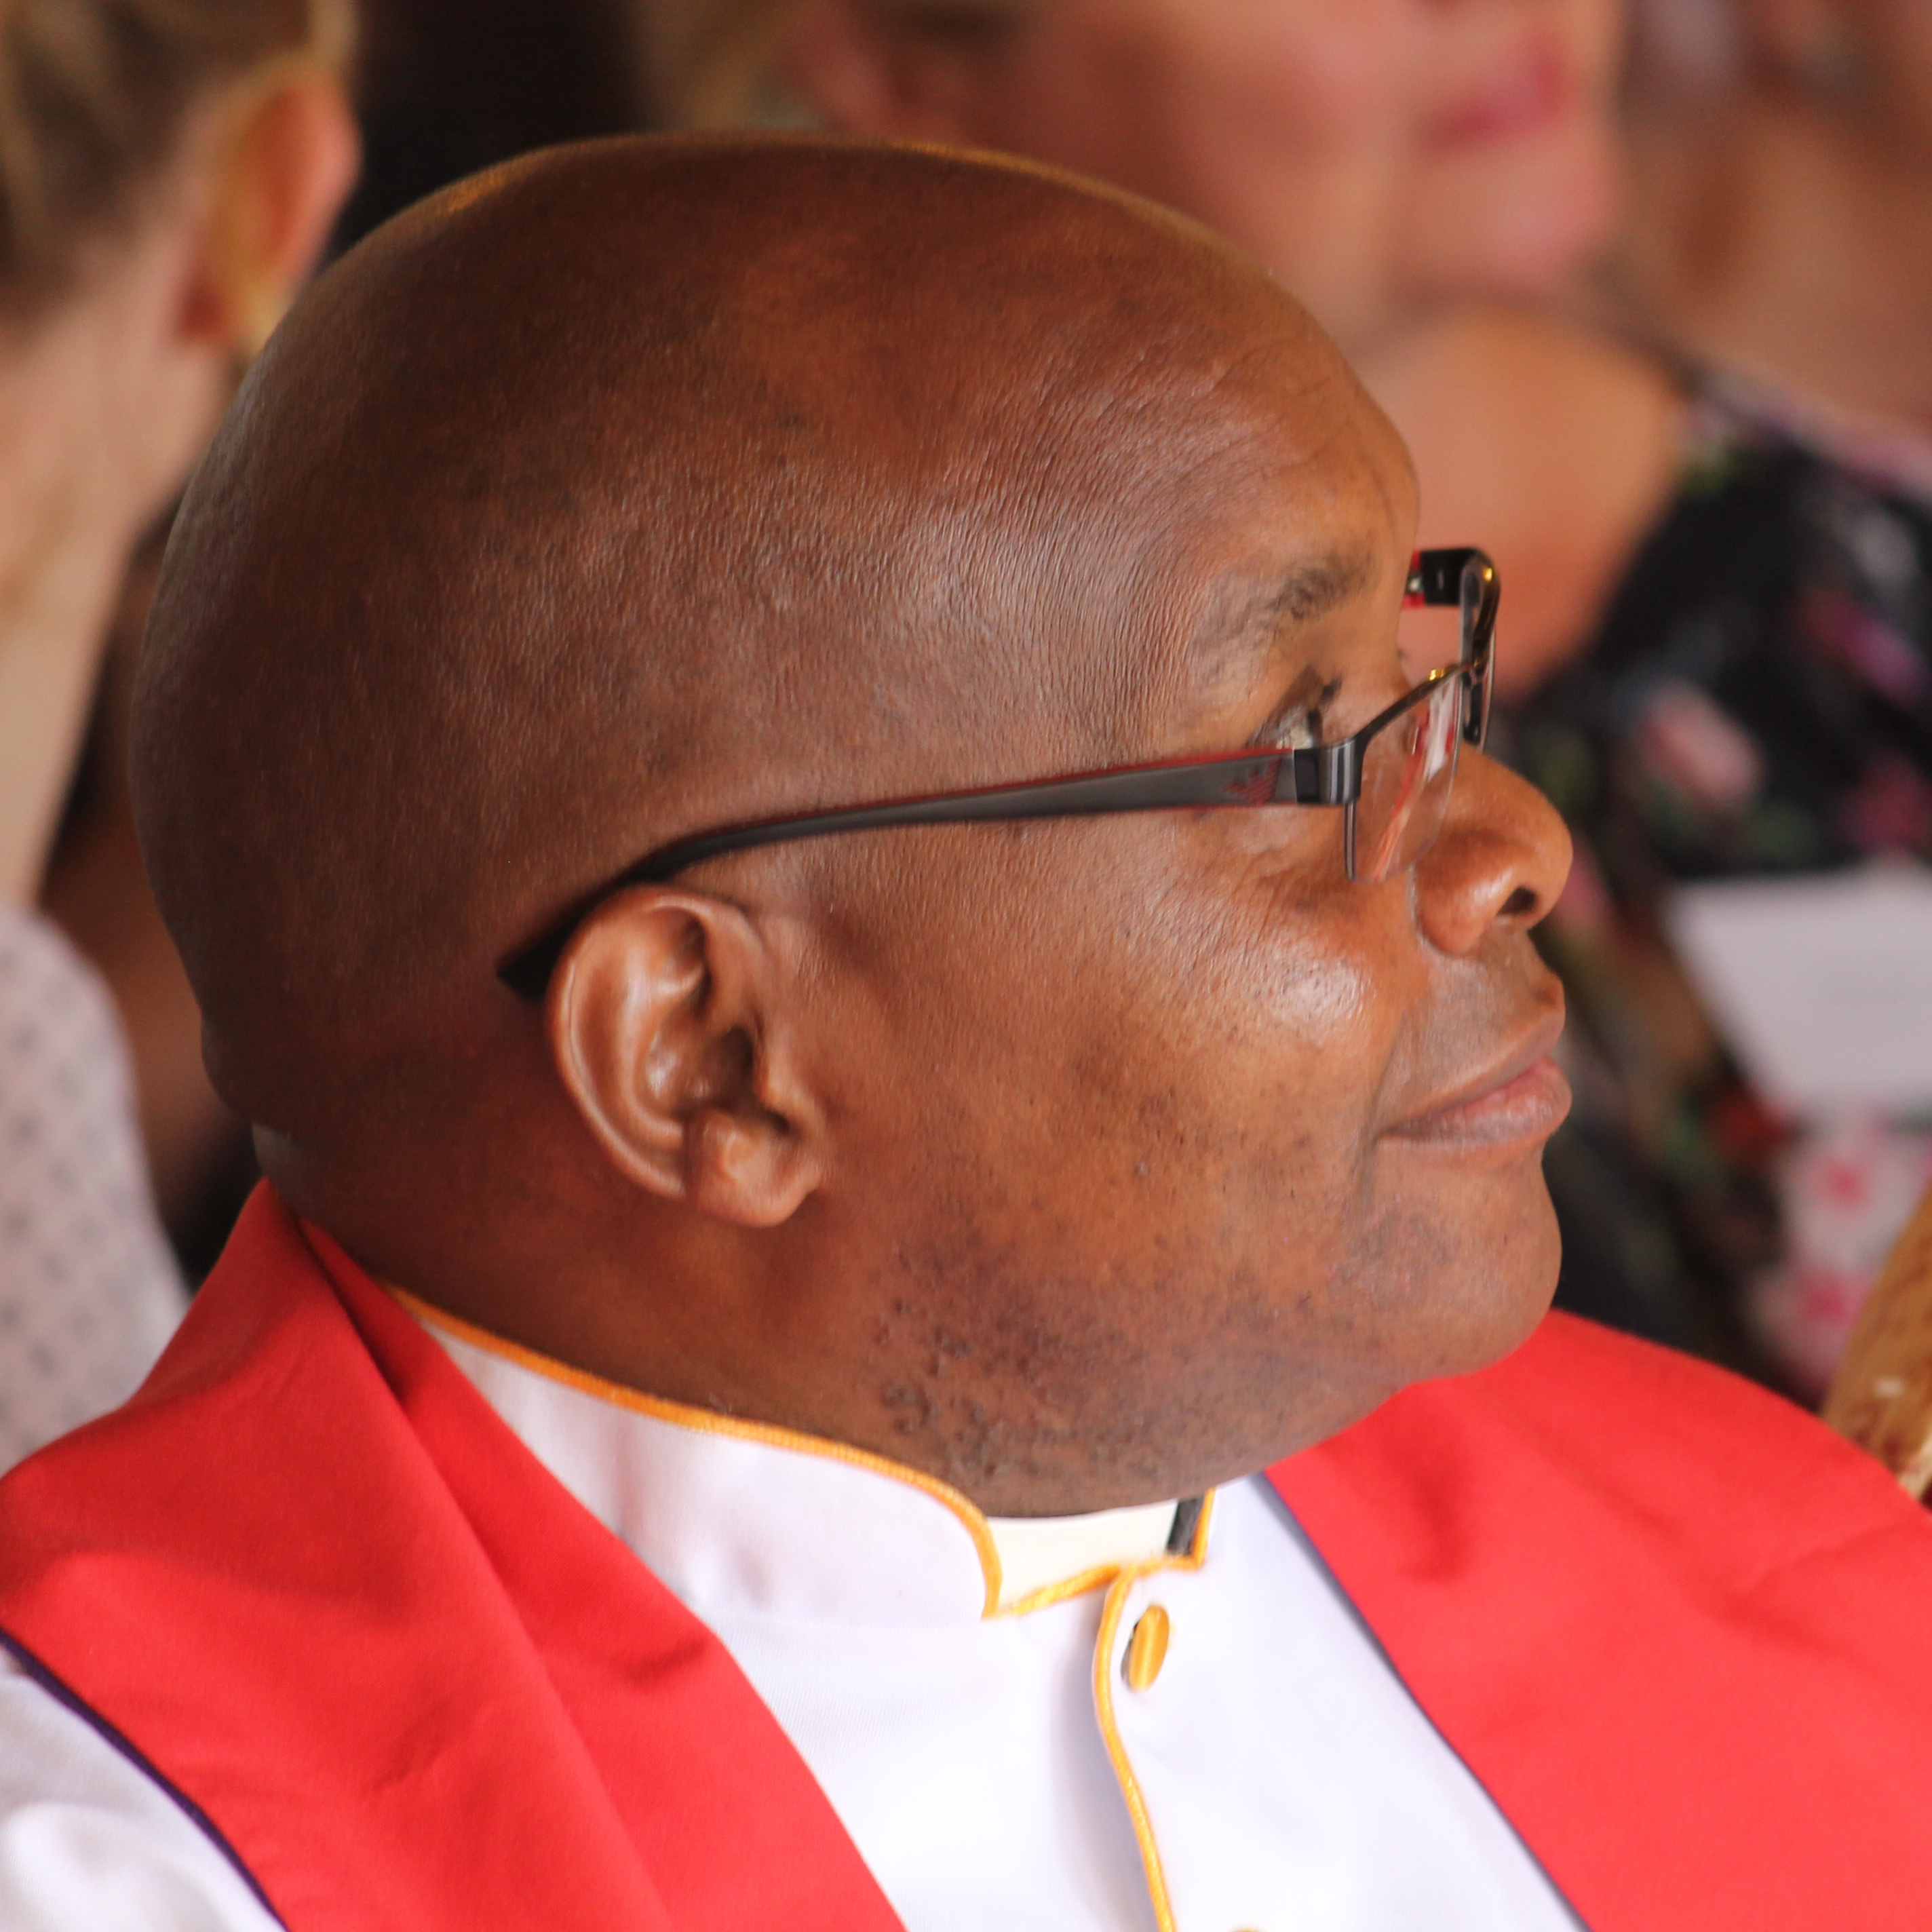 Rev. Luke Mwololo